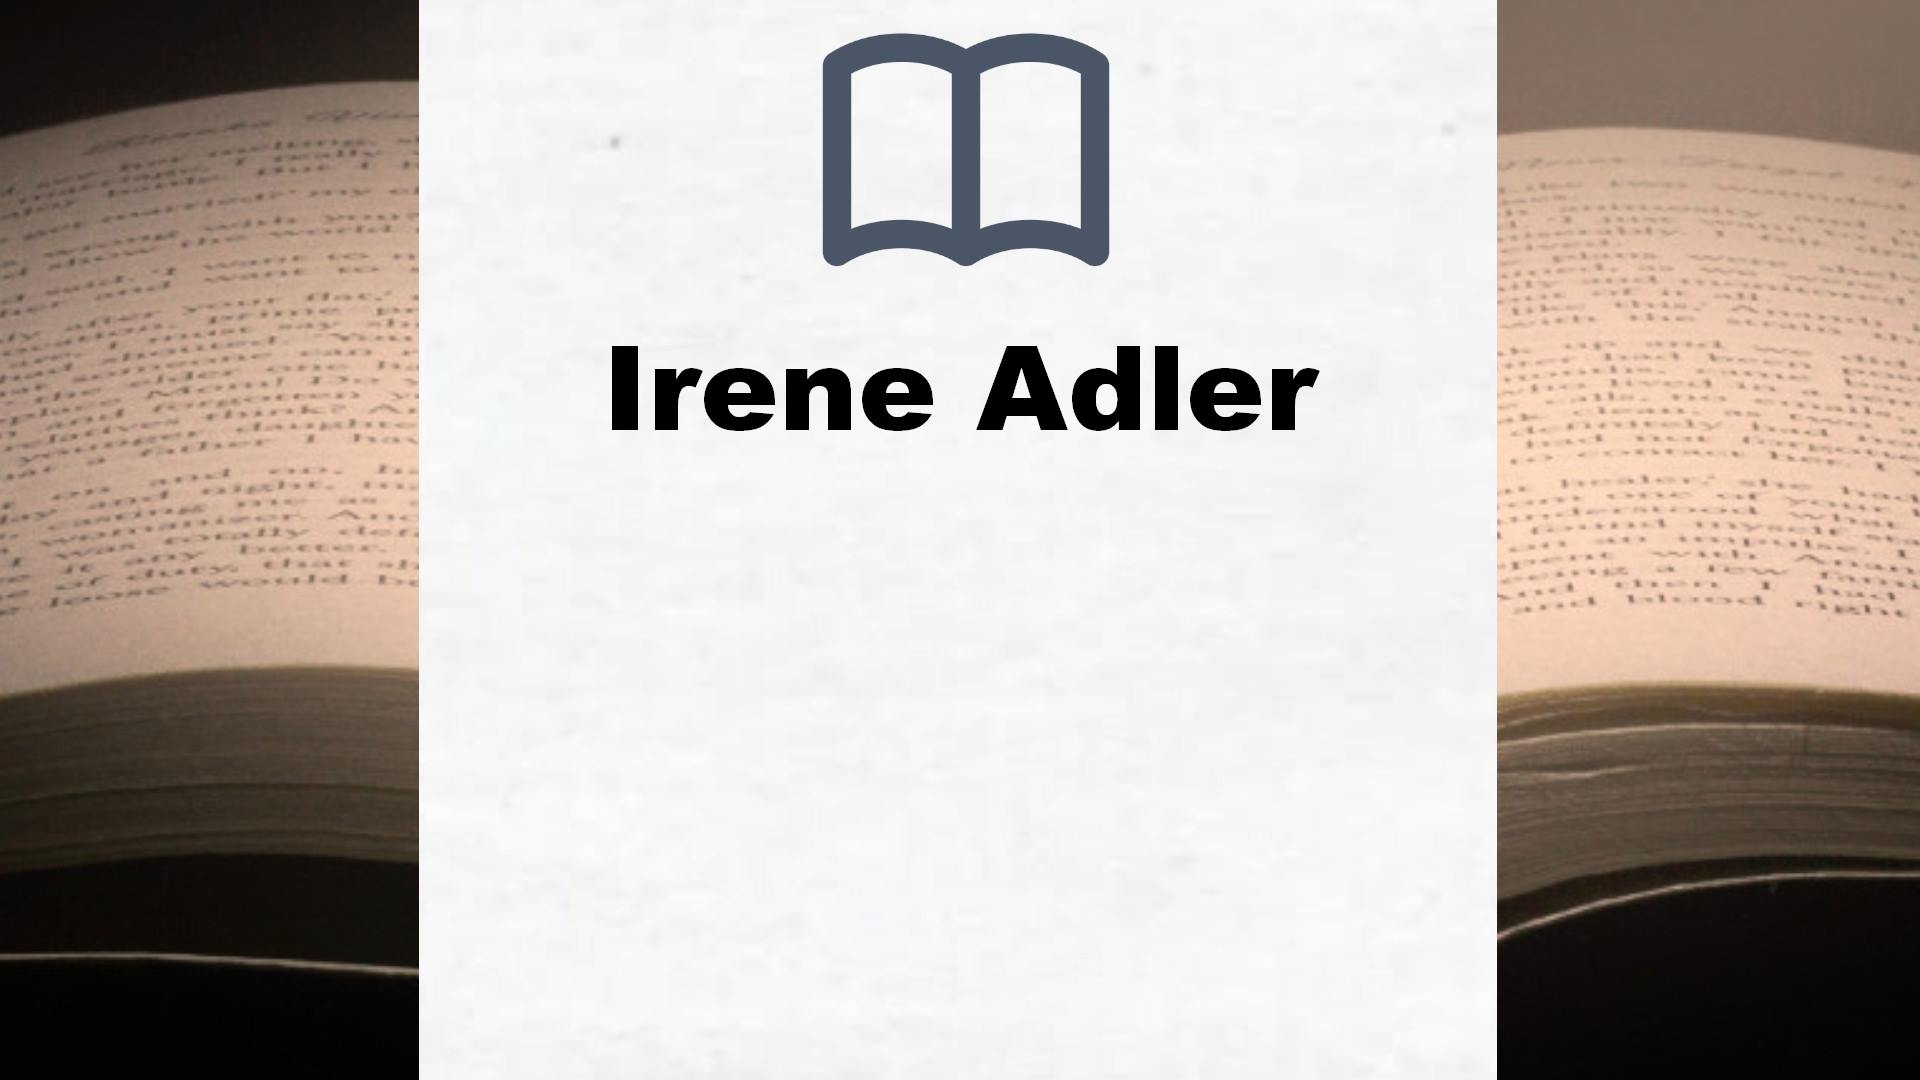 Libros Irene Adler